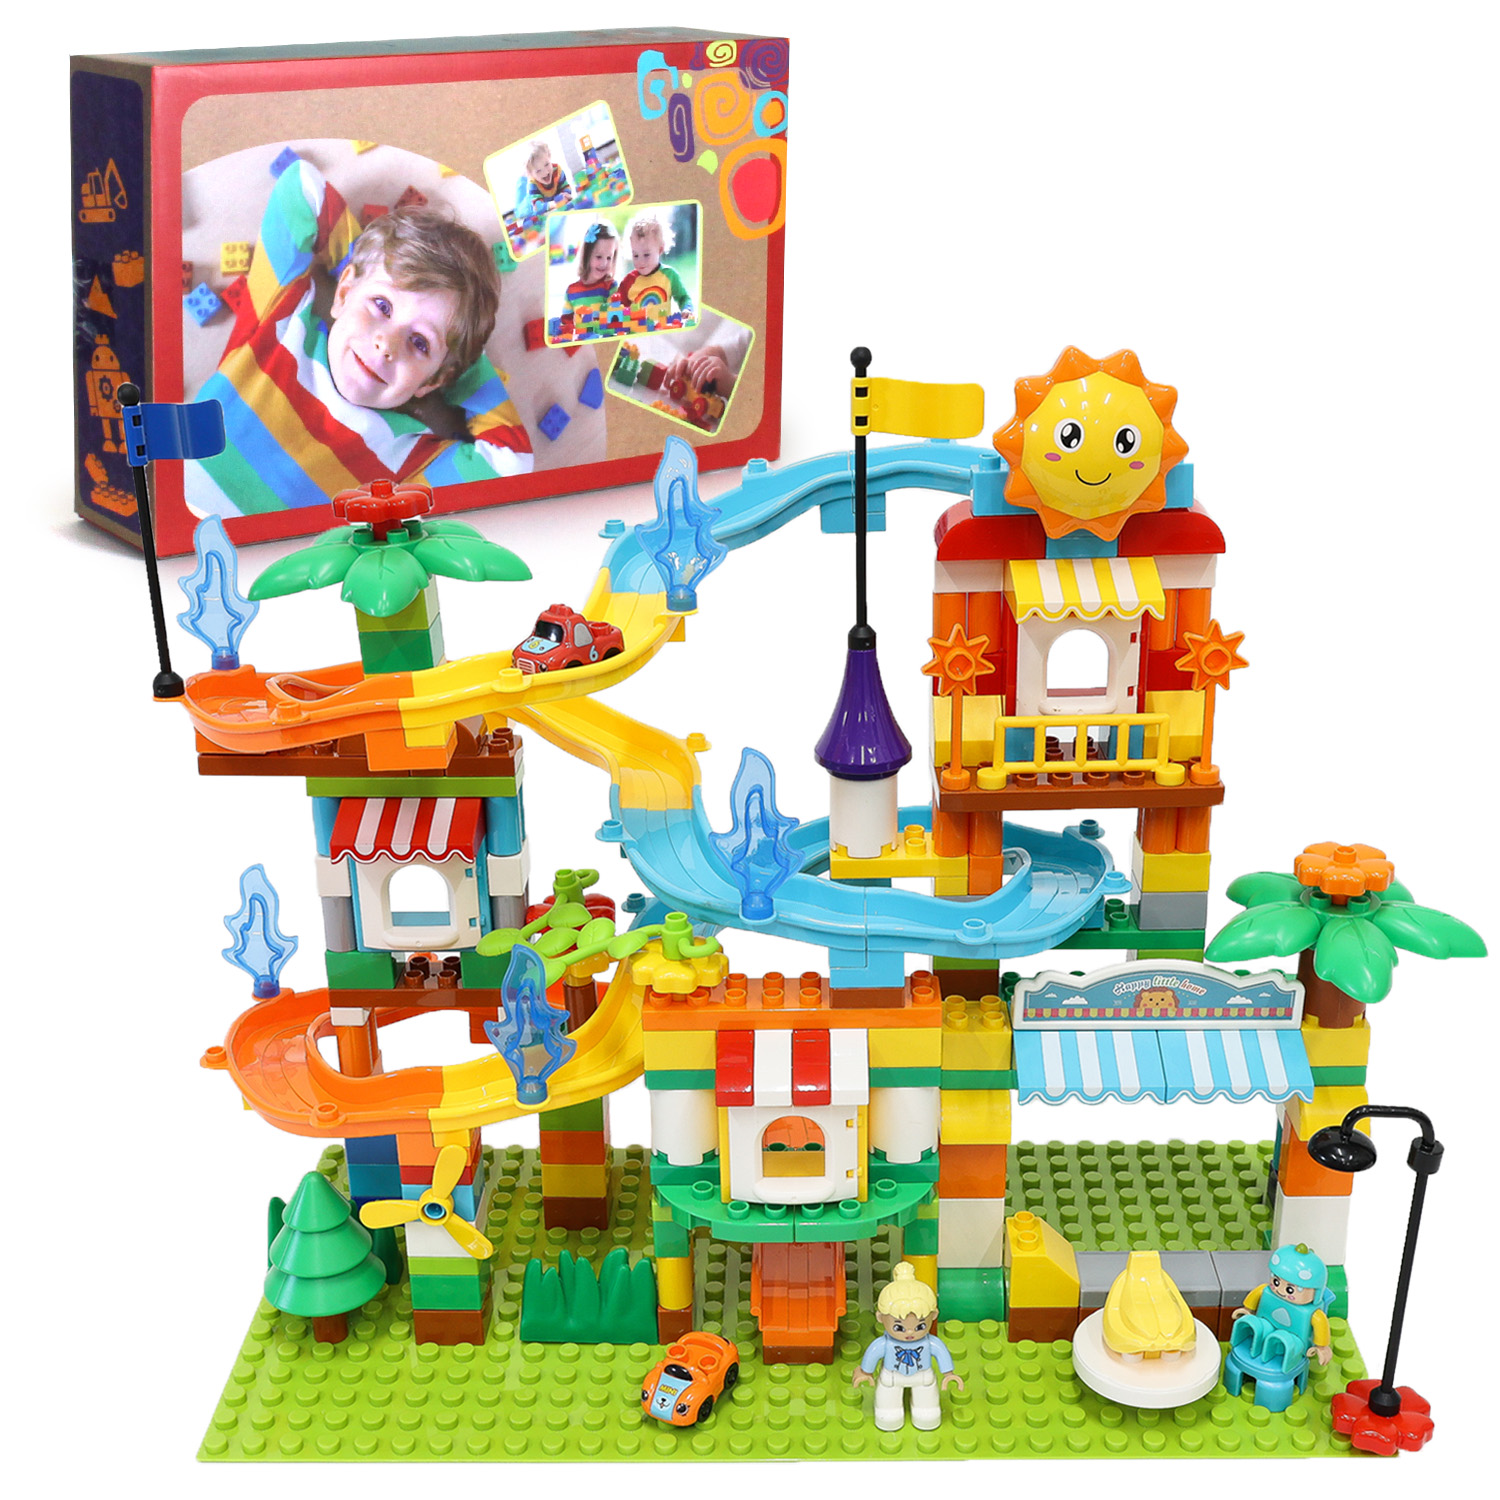 知育ブロック 211ピース デュプロ LEGO レゴ ブロック おもちゃ 追加ブロック 滑り台 おもちゃ 男の子 女の子 送料無料 室内遊び おうち遊び